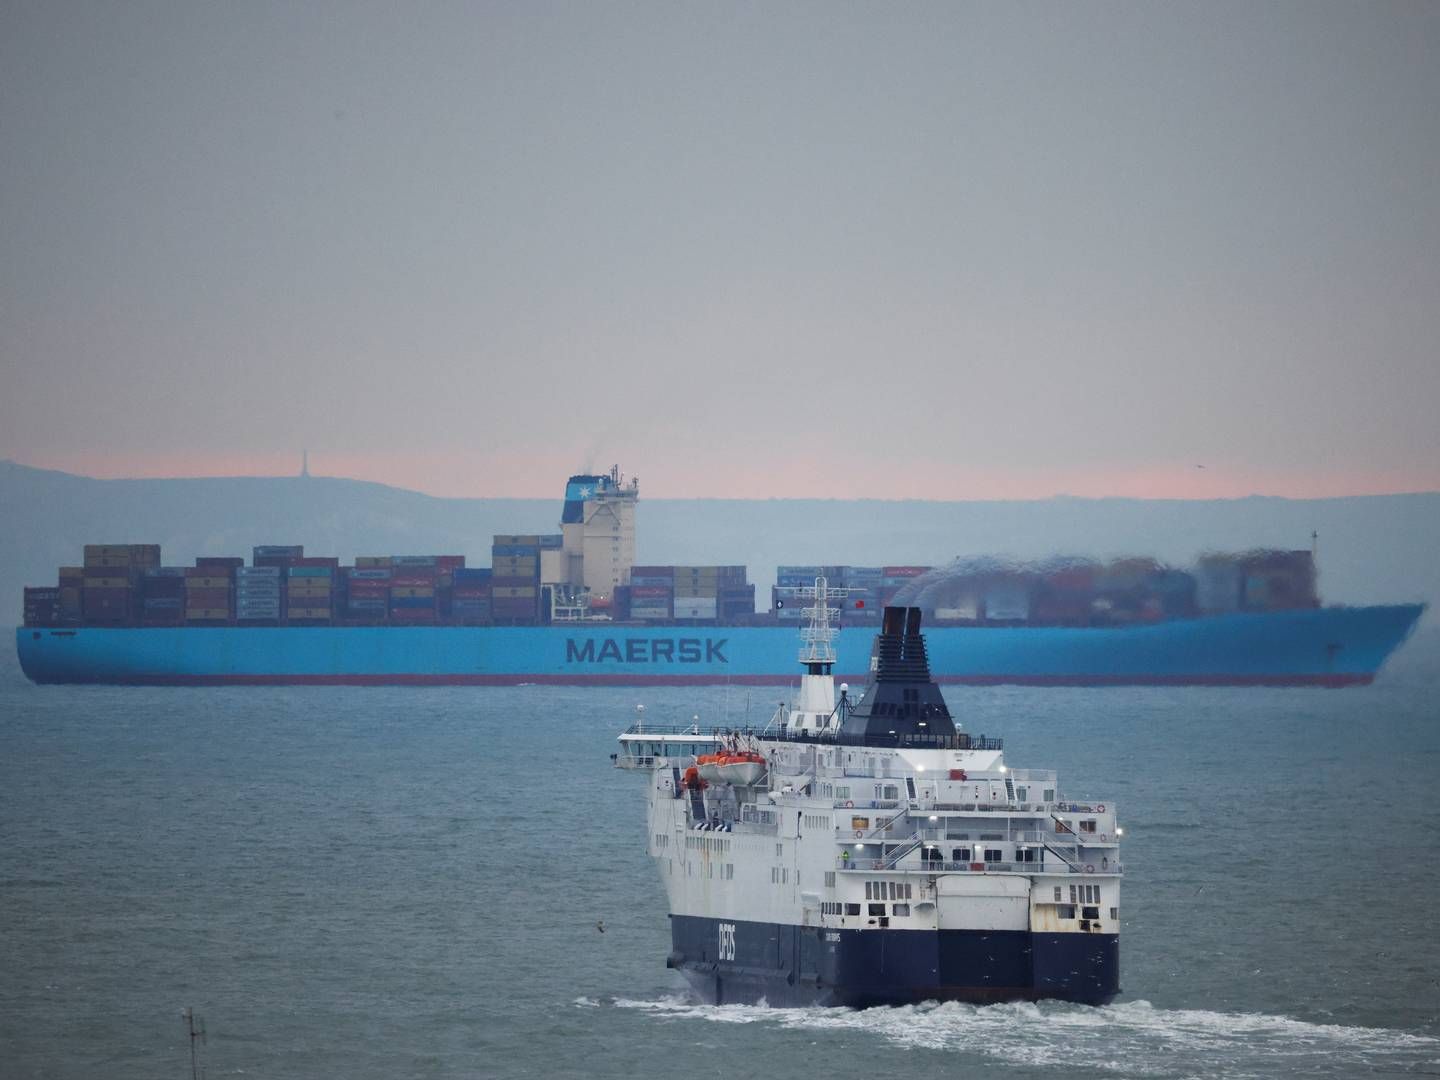 Et nyt politisk indgreb mod lav løn på færger i Den Engelske Kanal kan ifølge Danske Rederier inspirere andre lande til også at indføre deres egne krav til shippingselskaber. | Foto: John Sibley/Reuters/Ritzau Scanpix